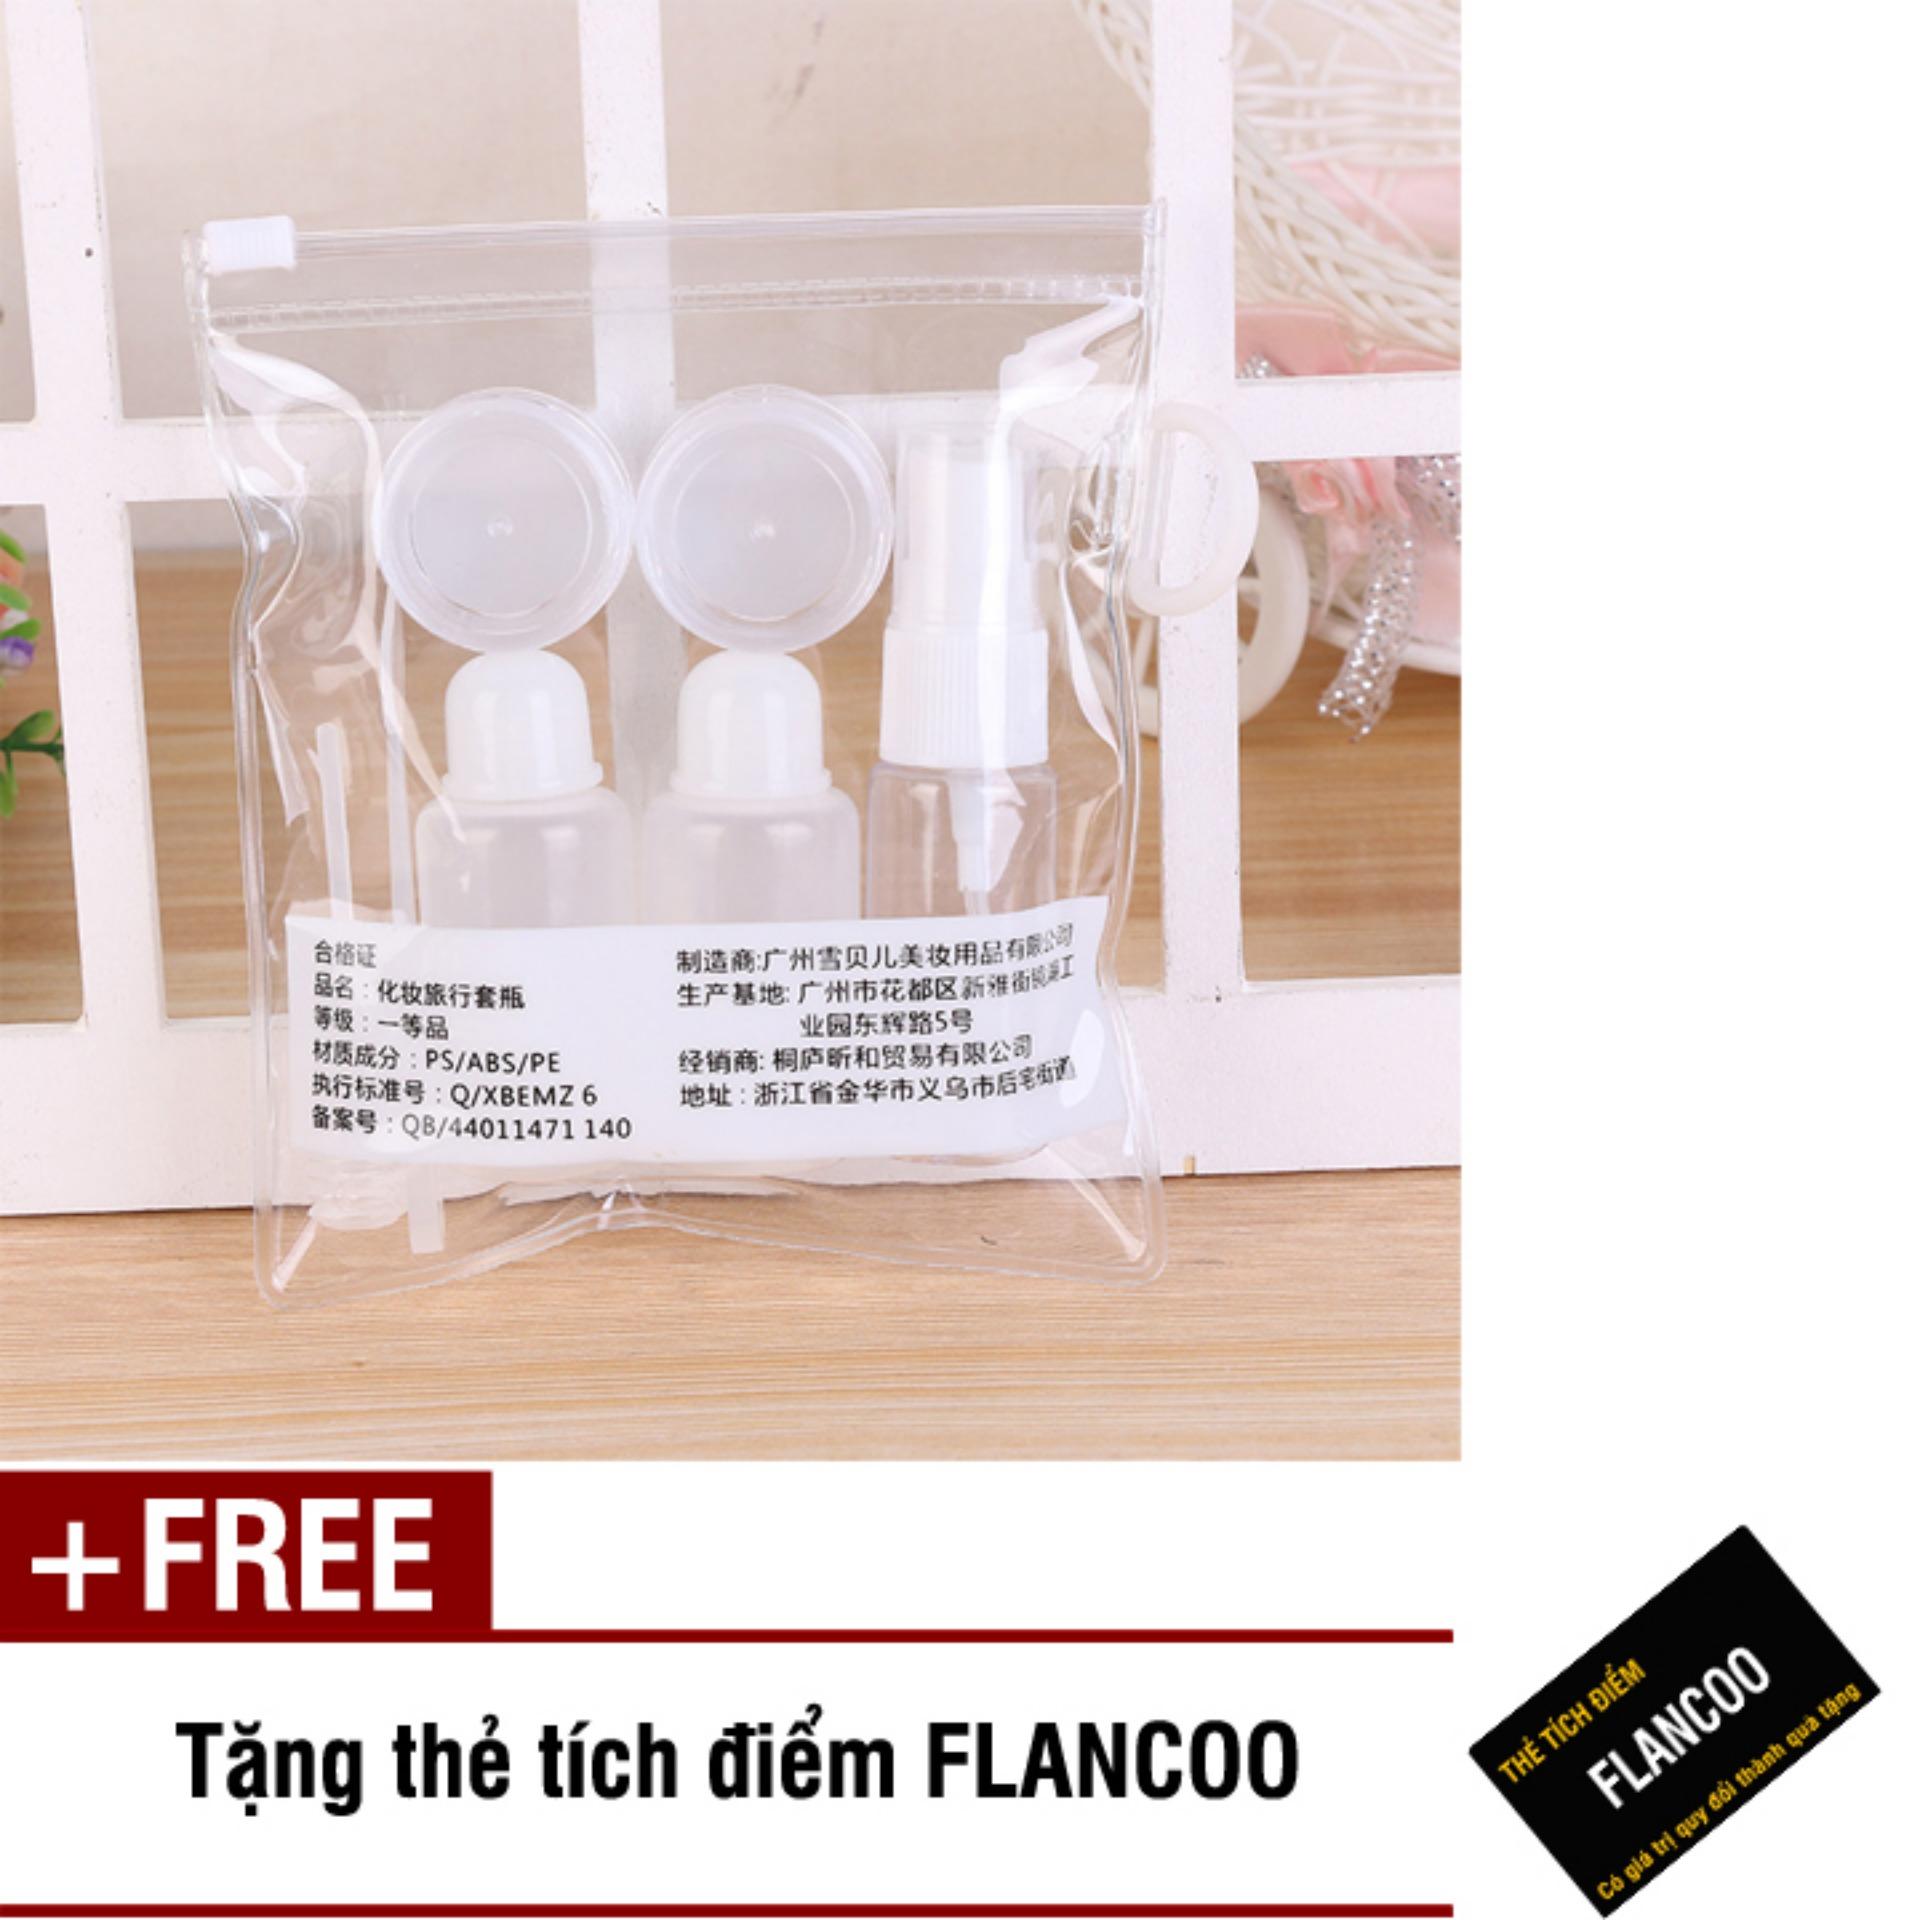 Bộ chiết mỹ phẩm du lịch 7 món Flancoo S1261 (Trắng) + Tặng kèm thẻ tích điểm Flancoo